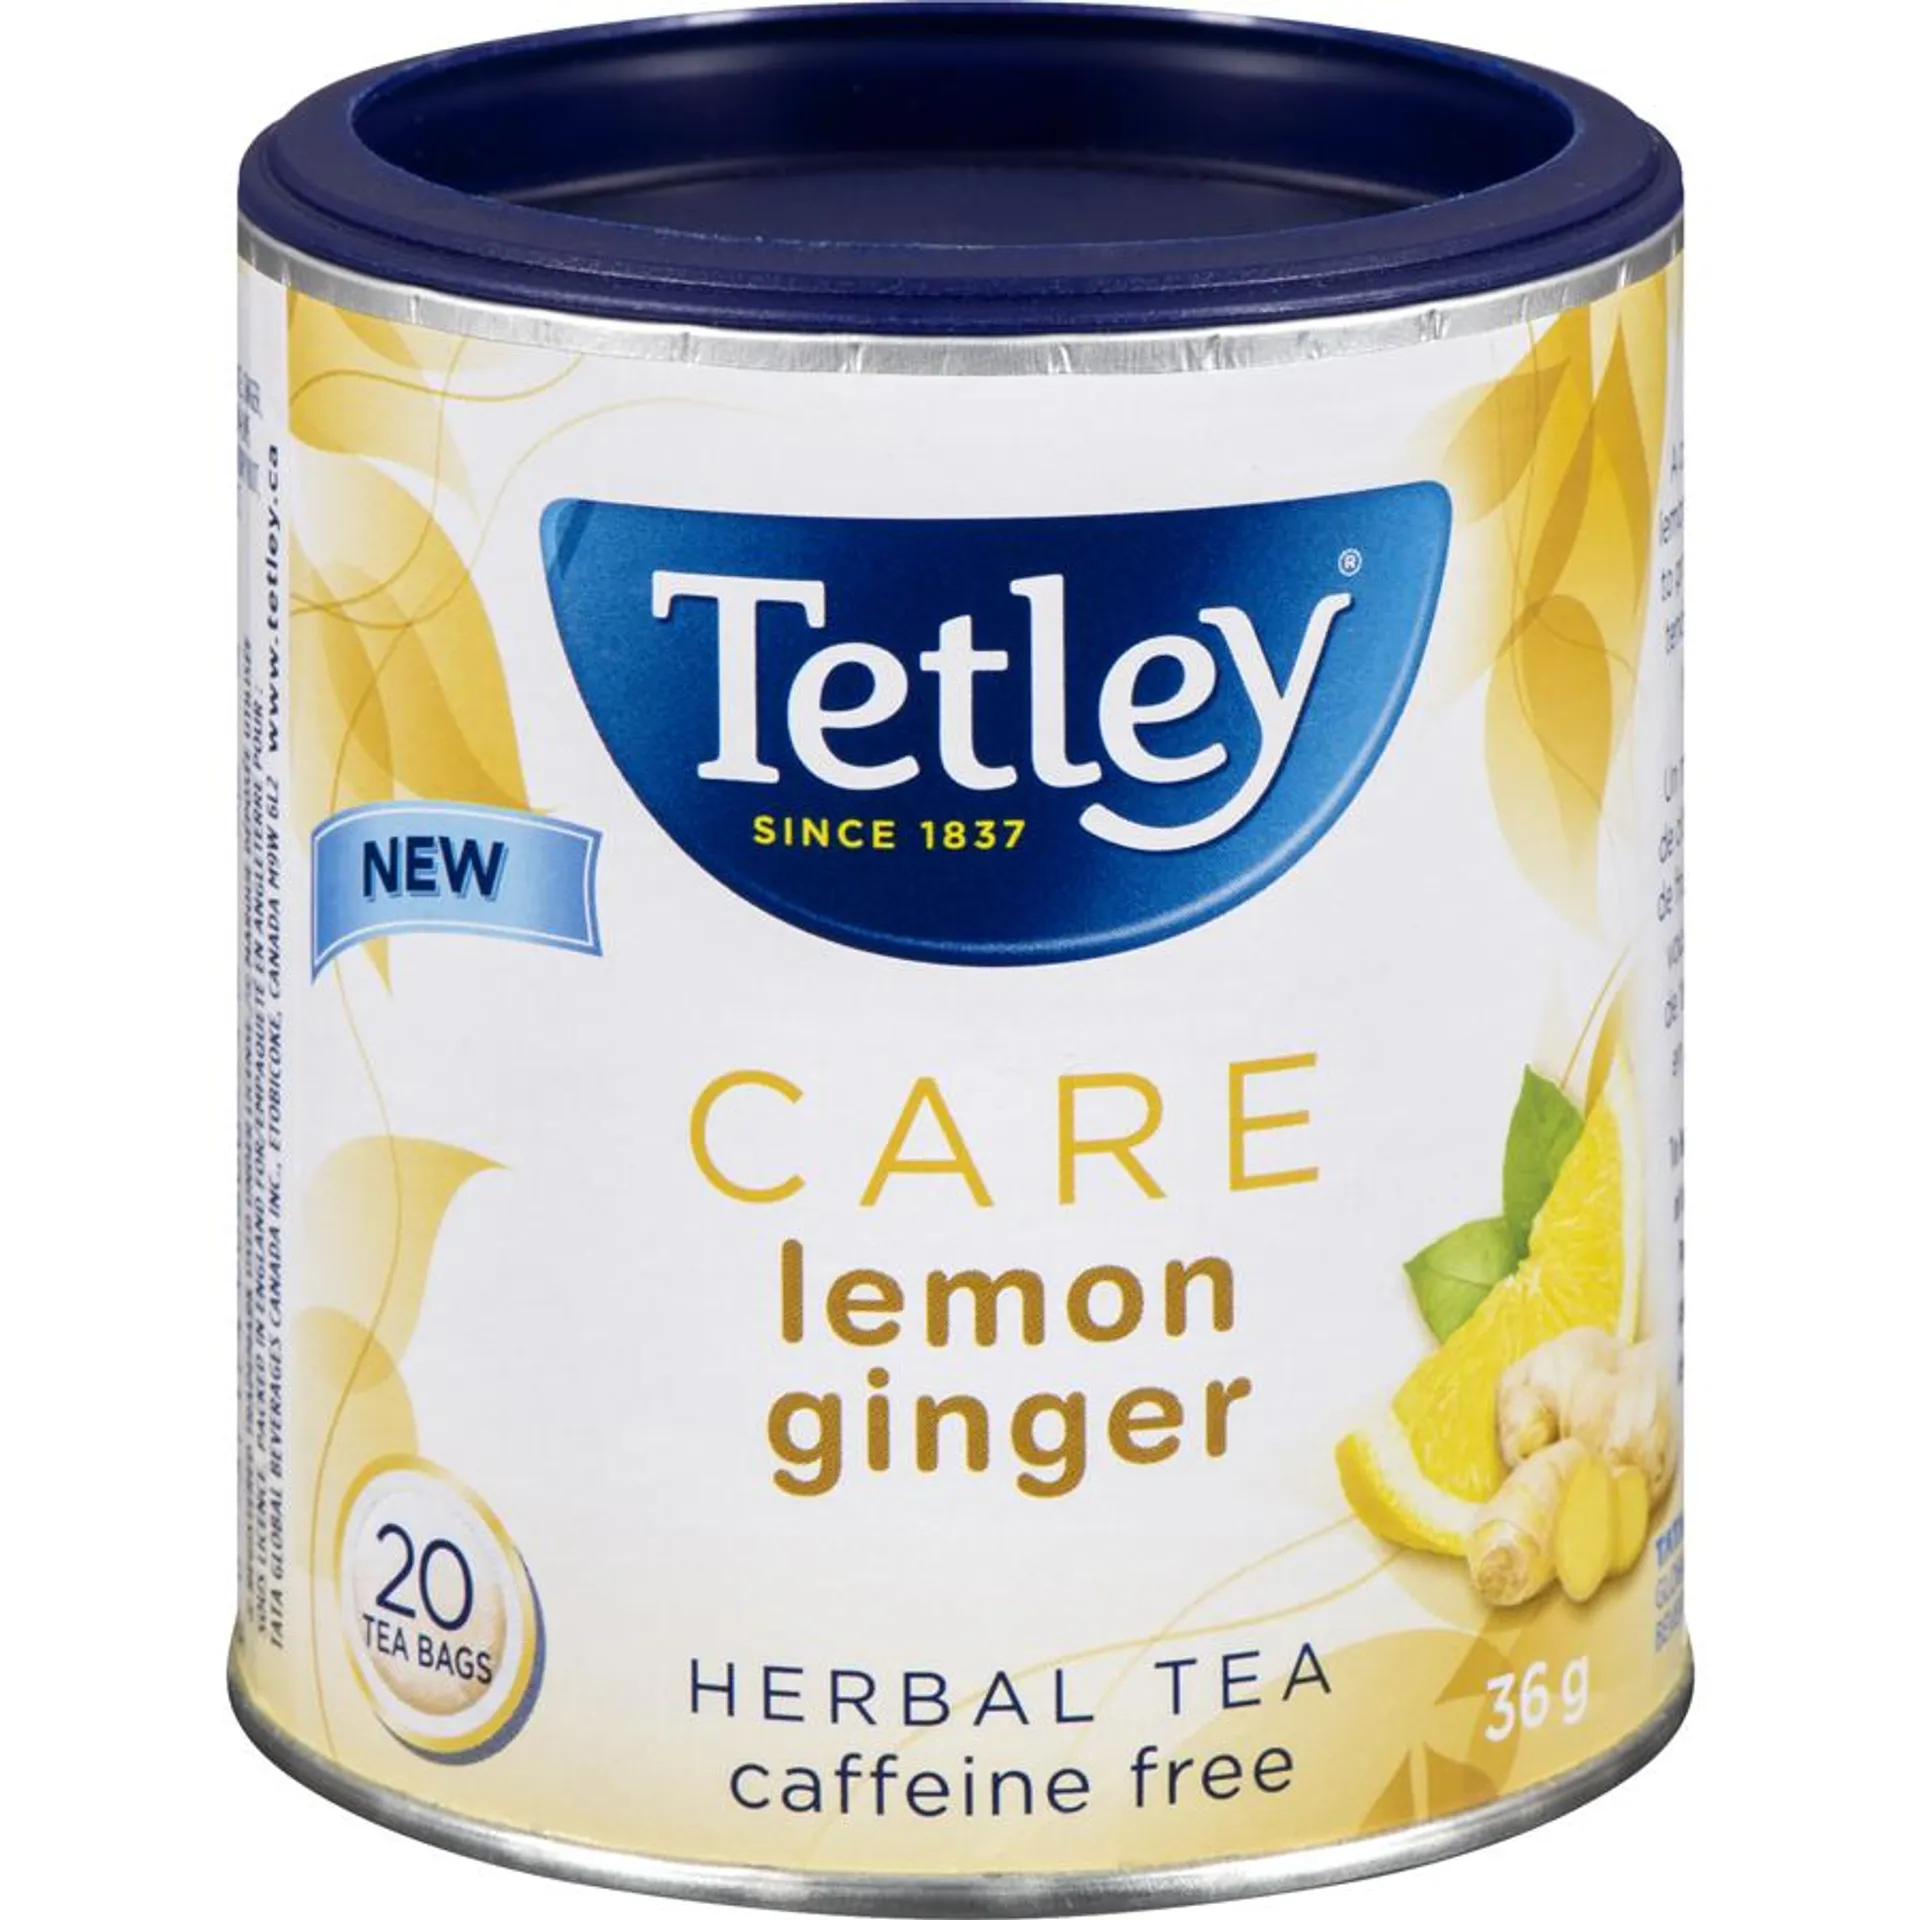 Care Lemon Ginger Herbal Tea